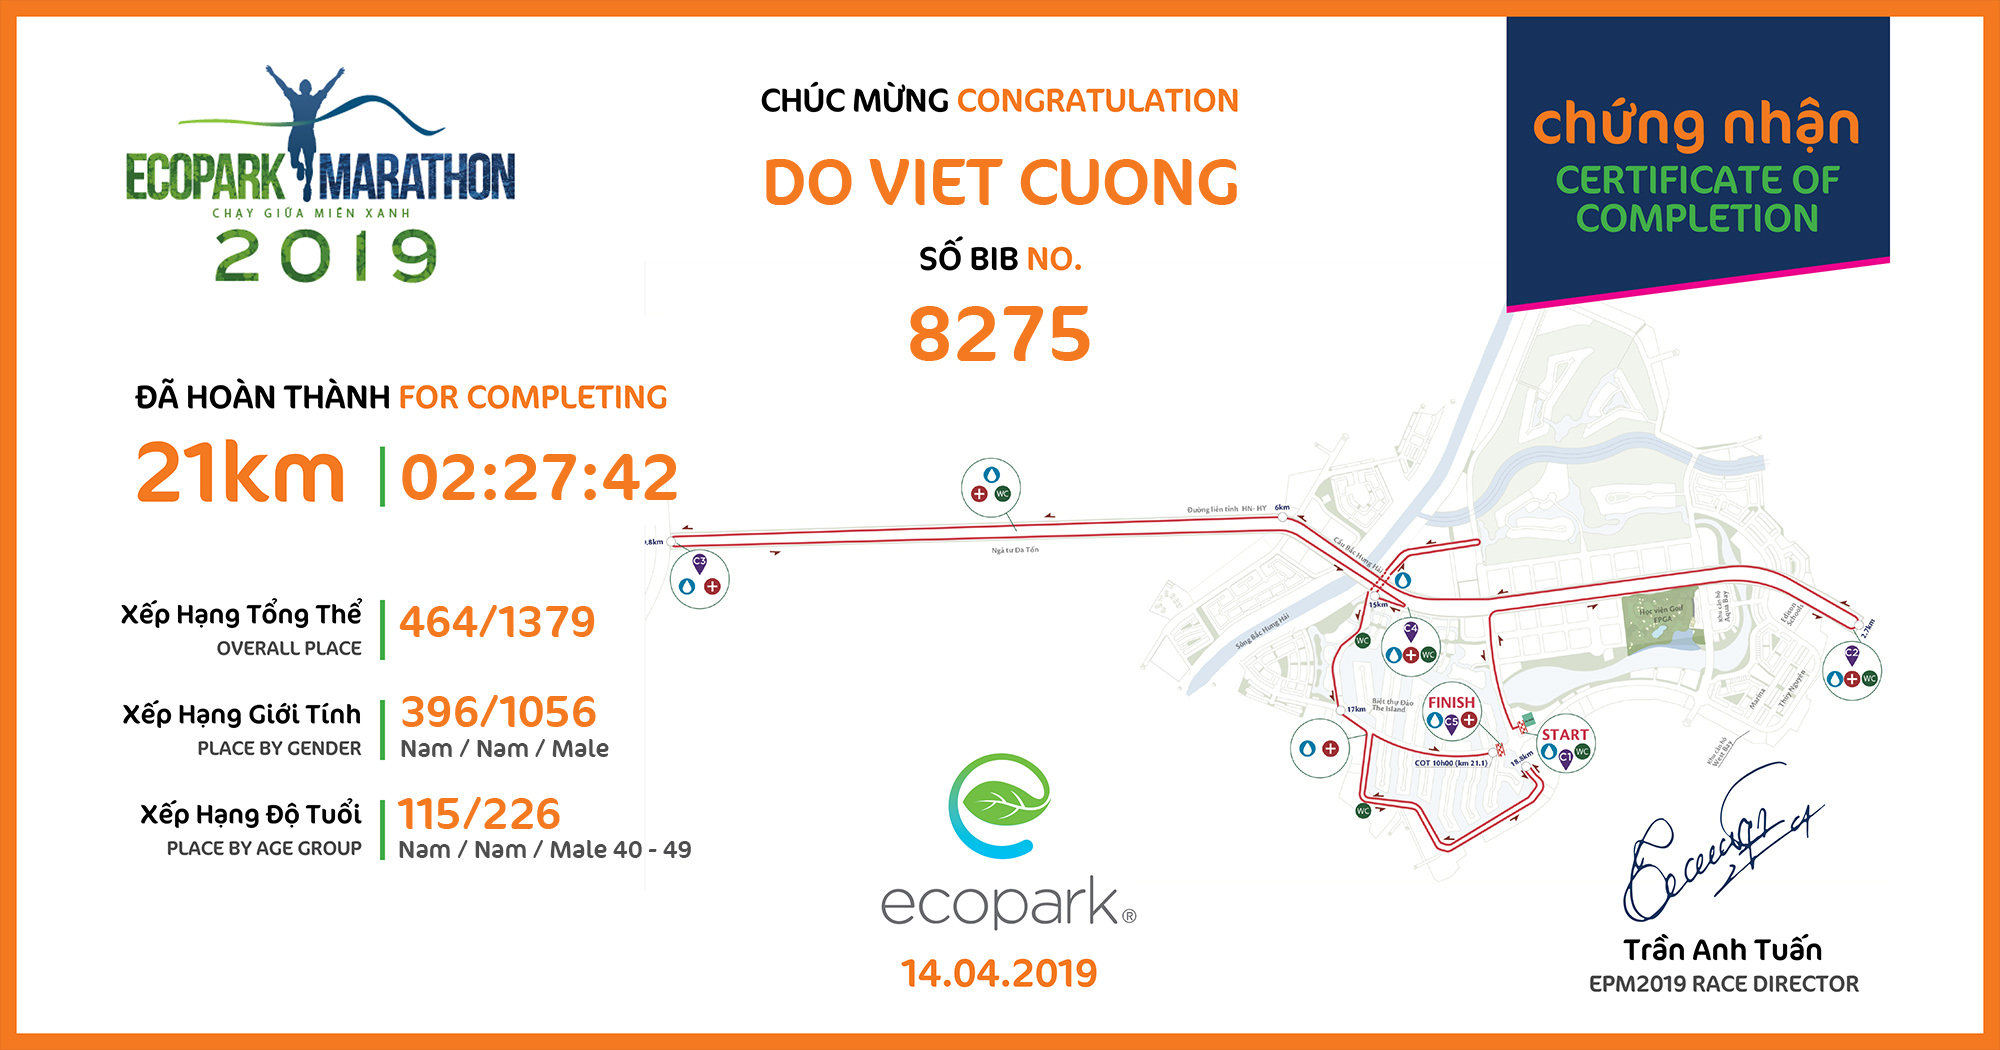 8275 - Do Viet Cuong